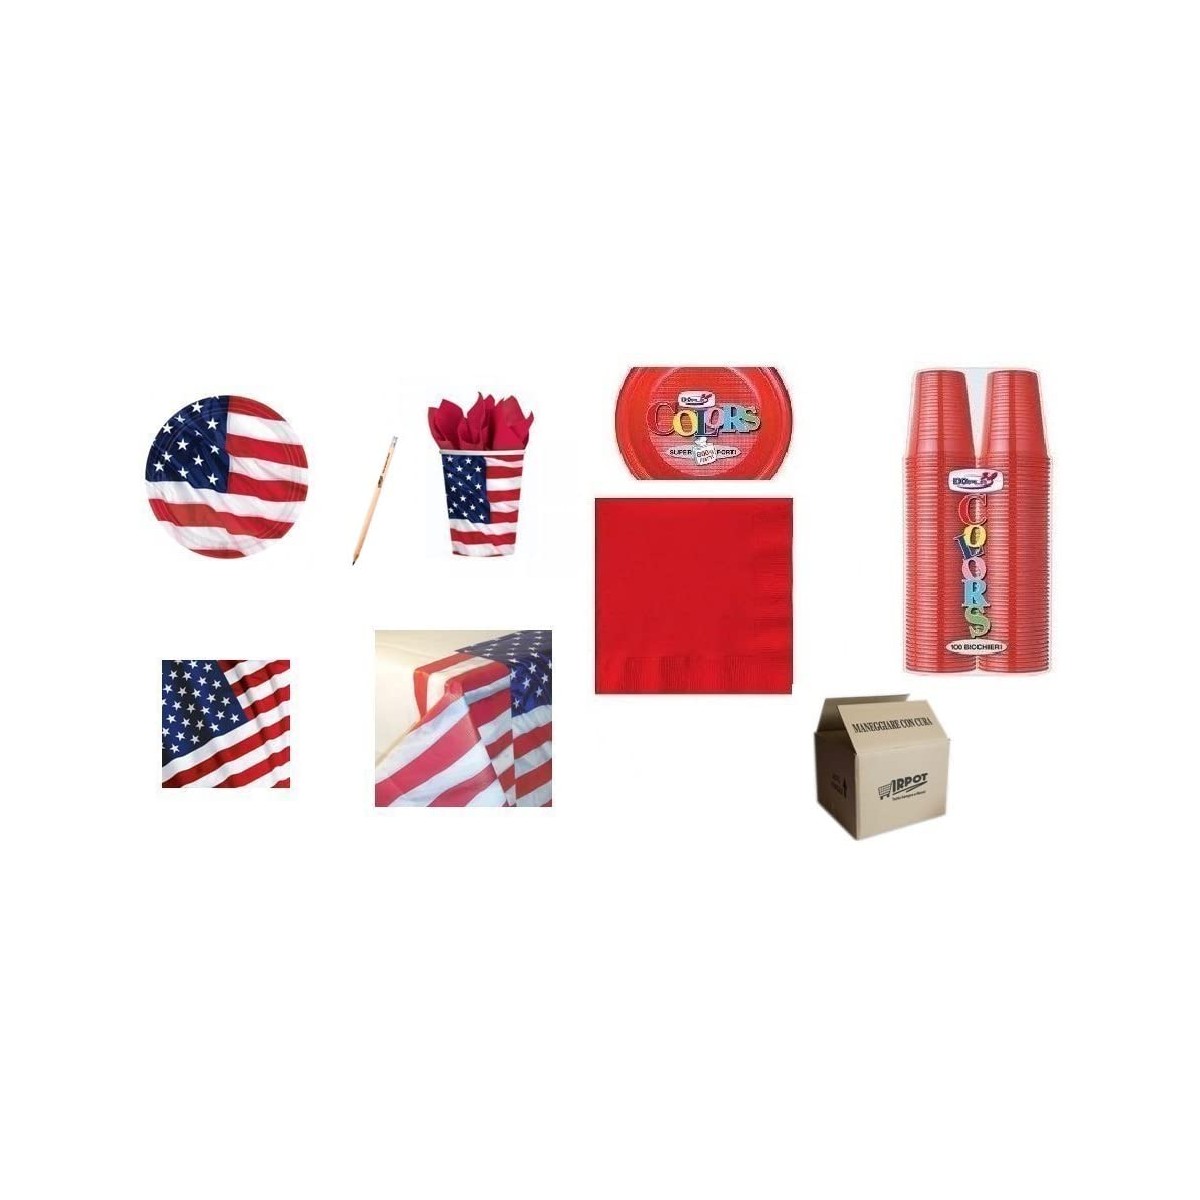 Kit per 38 persone tema USA, bandiera Americana, coordinato tavola